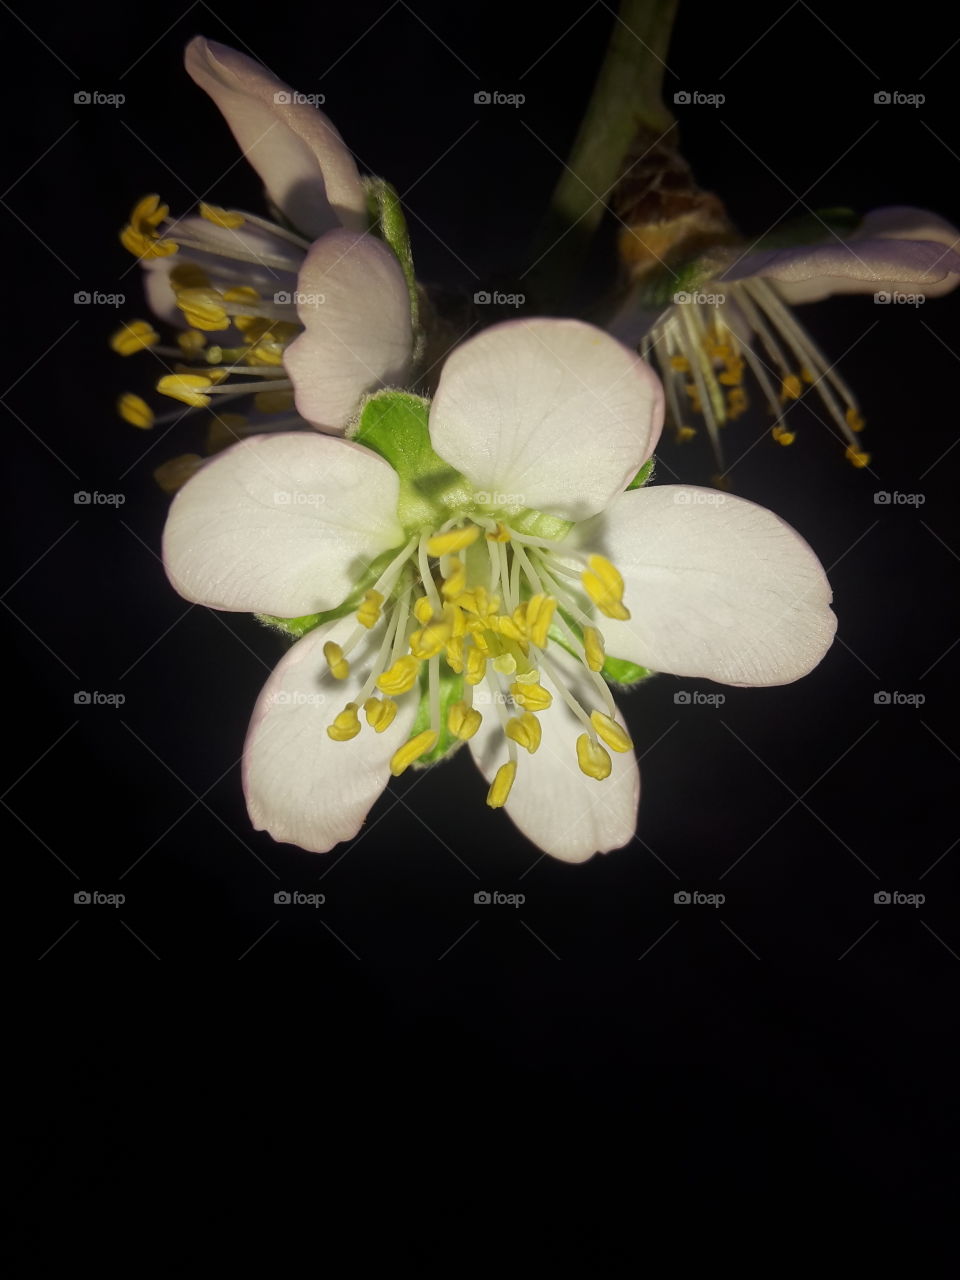 زهرة . زهرة اللوز 
Flower . Almond flower